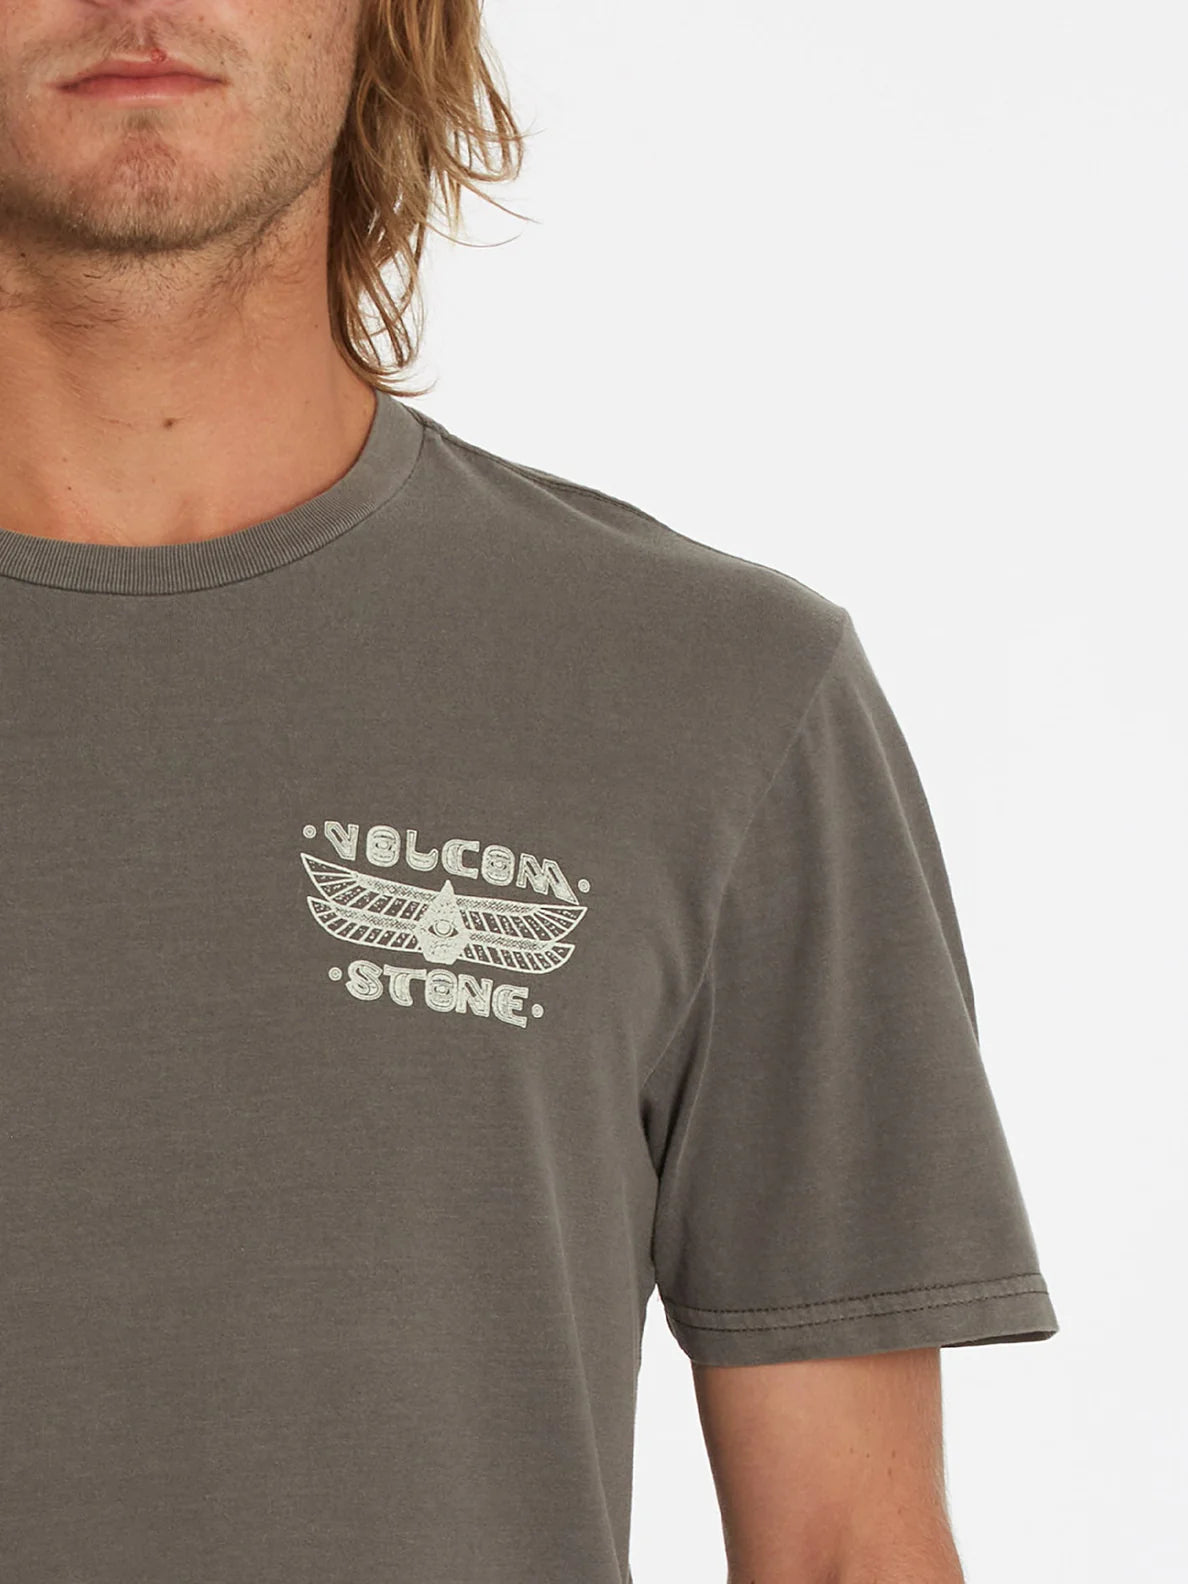 Volcom Mystic Magic SS T-Shirt Sturmwolken-T-Shirt | Meistverkaufte Produkte | Neue Produkte | Neueste Produkte | surfdevils.com